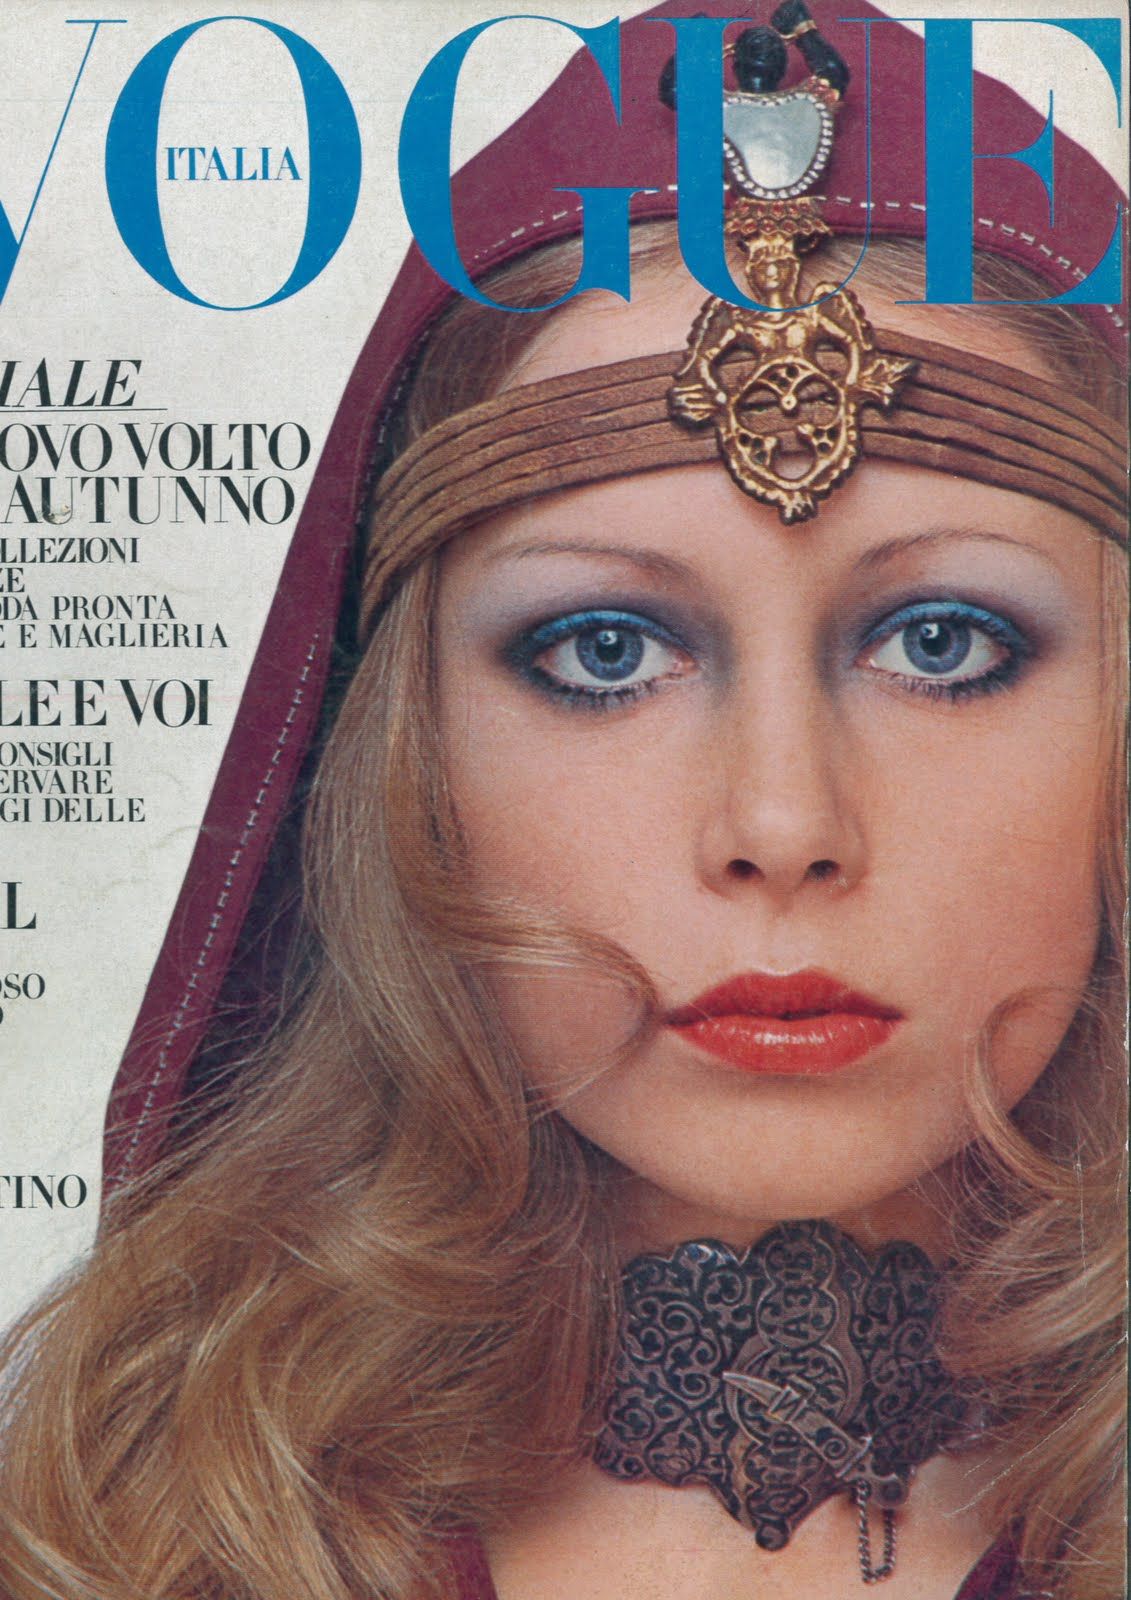 Salt: главное здесь, остальное по вкусу - Патти Бойд на обложке Vogue Italia, август 1969